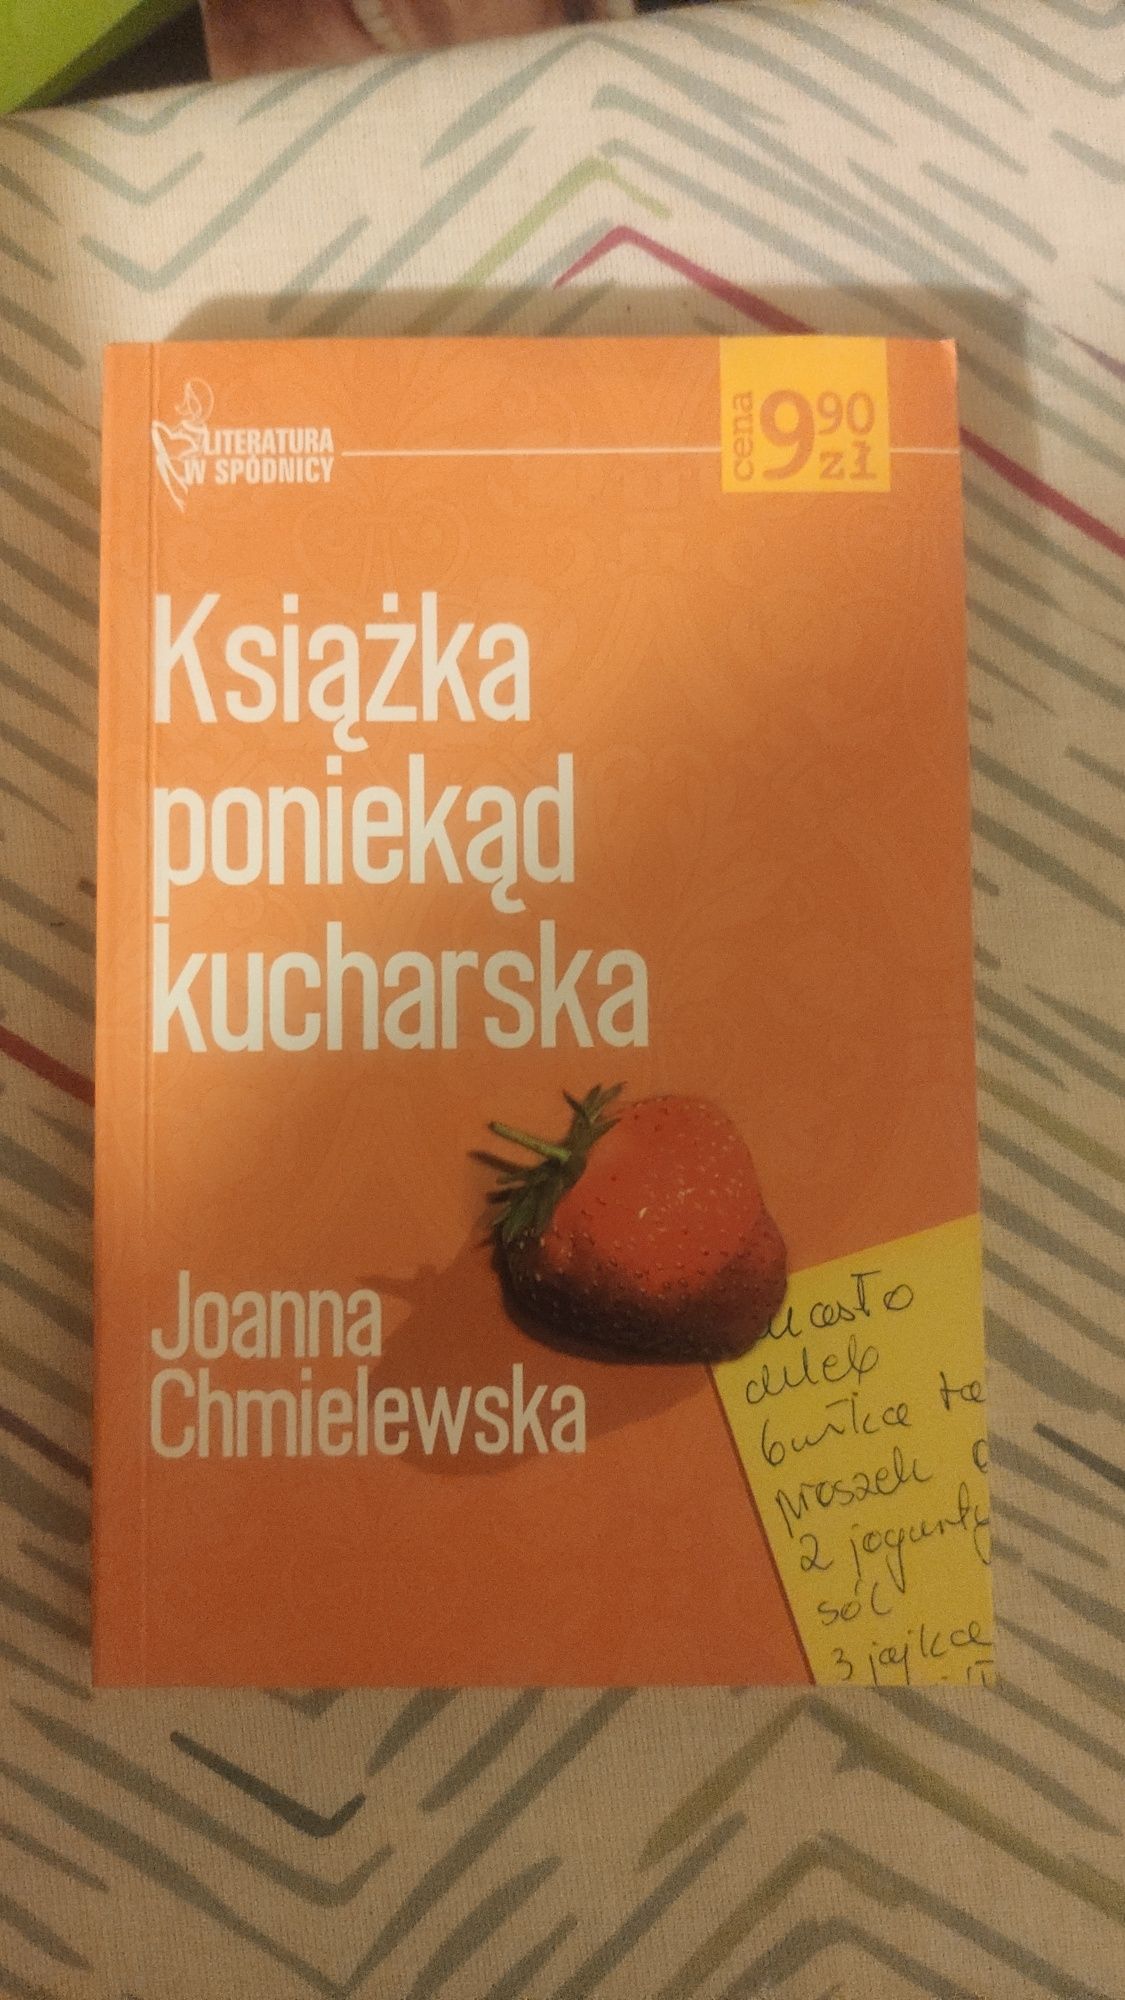 Joanna Chmielewska "Książka poniekąd kucharska"